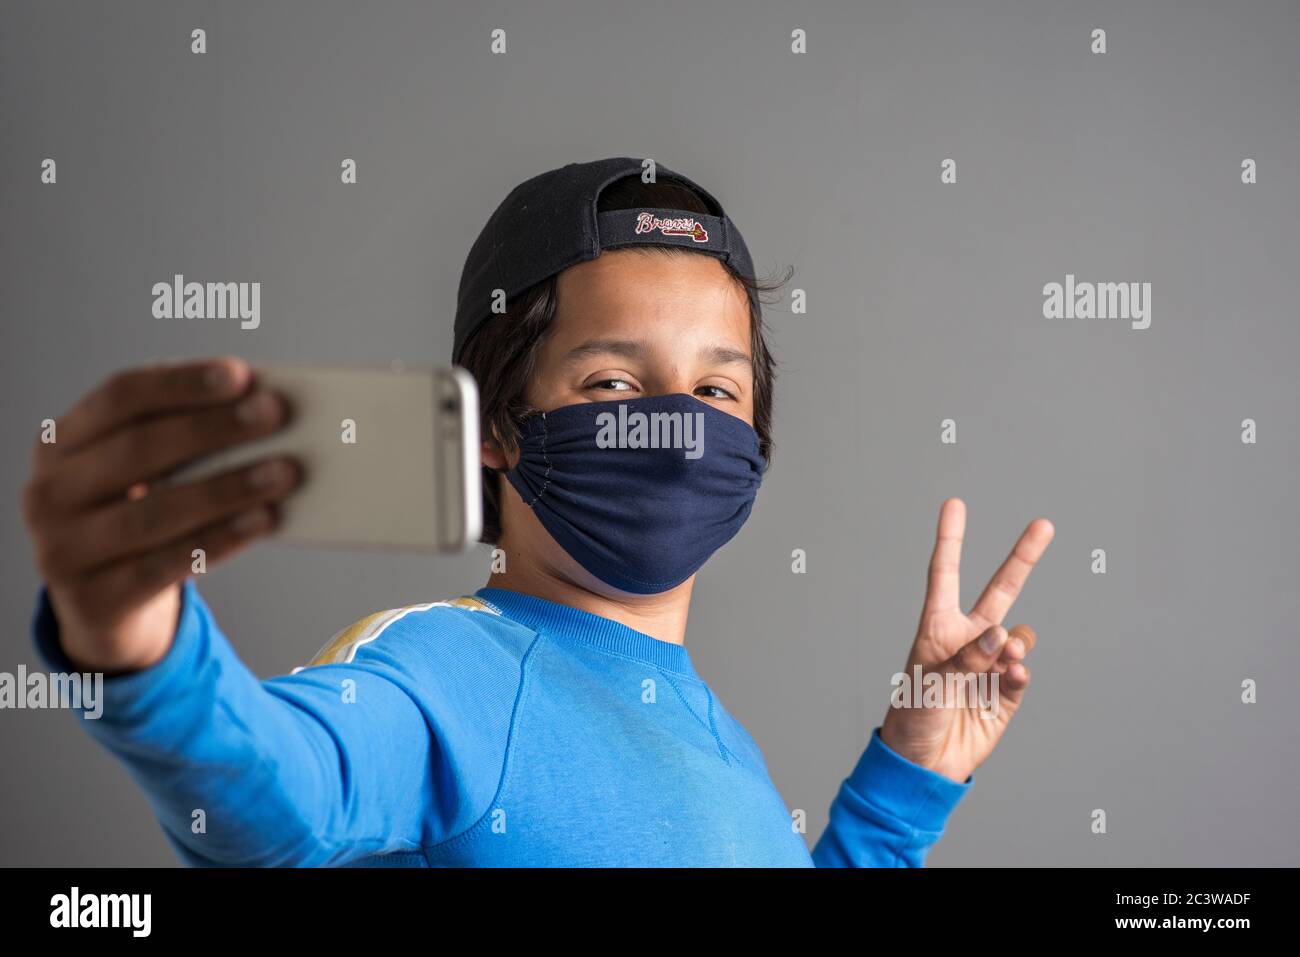 Adolescent, prenant des selfies portant un masque facial Banque D'Images